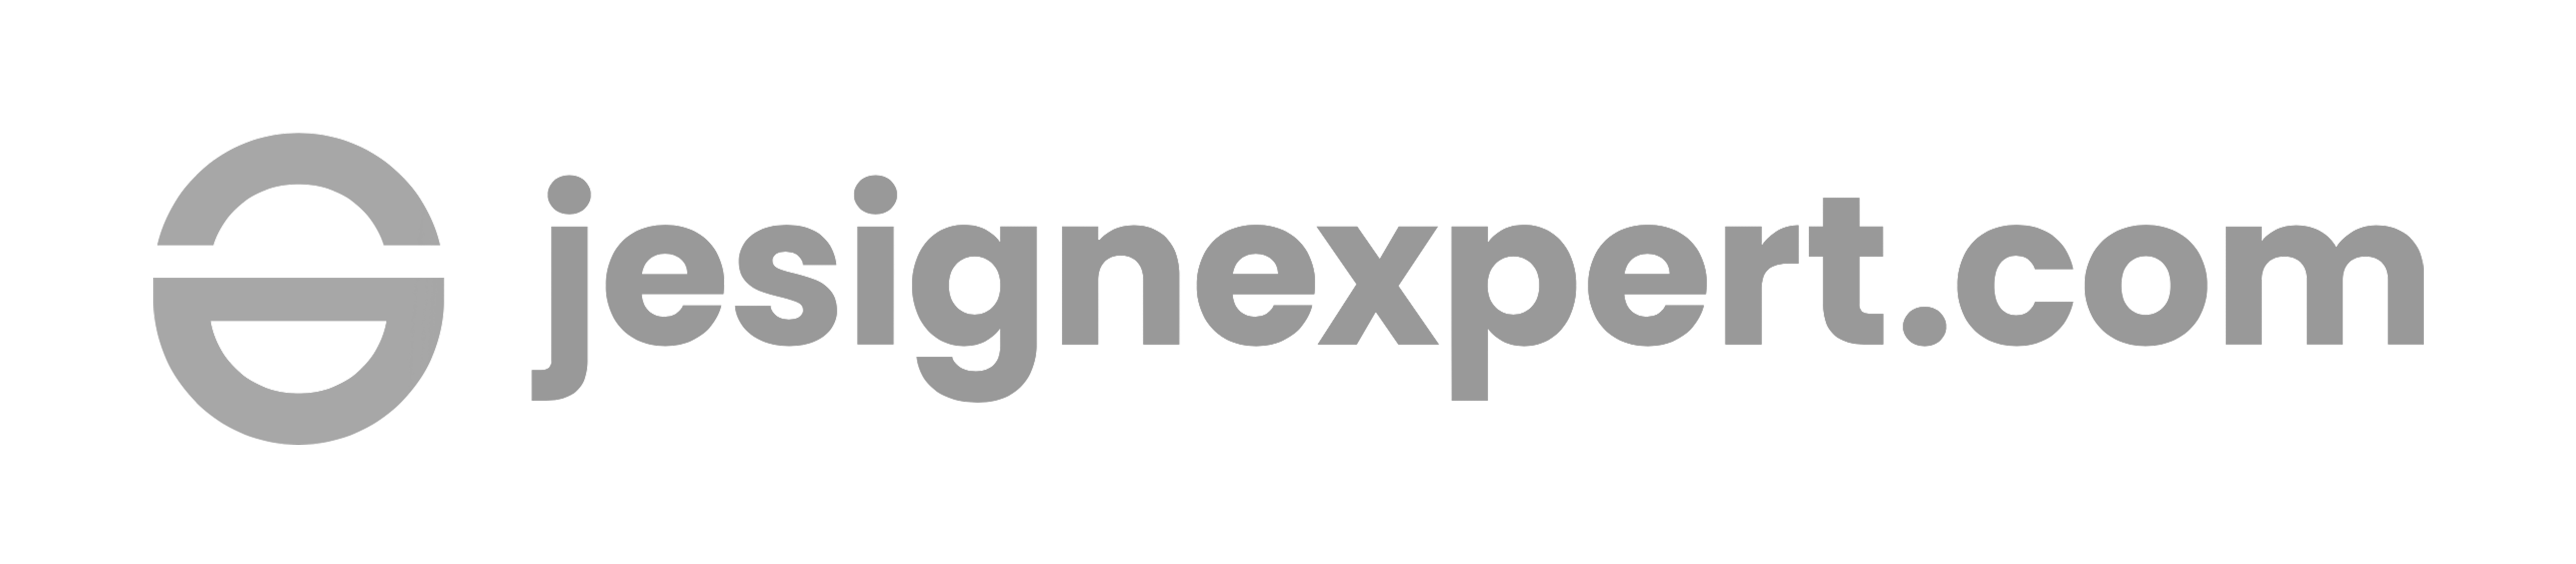 Logo jesignexpert.com gris